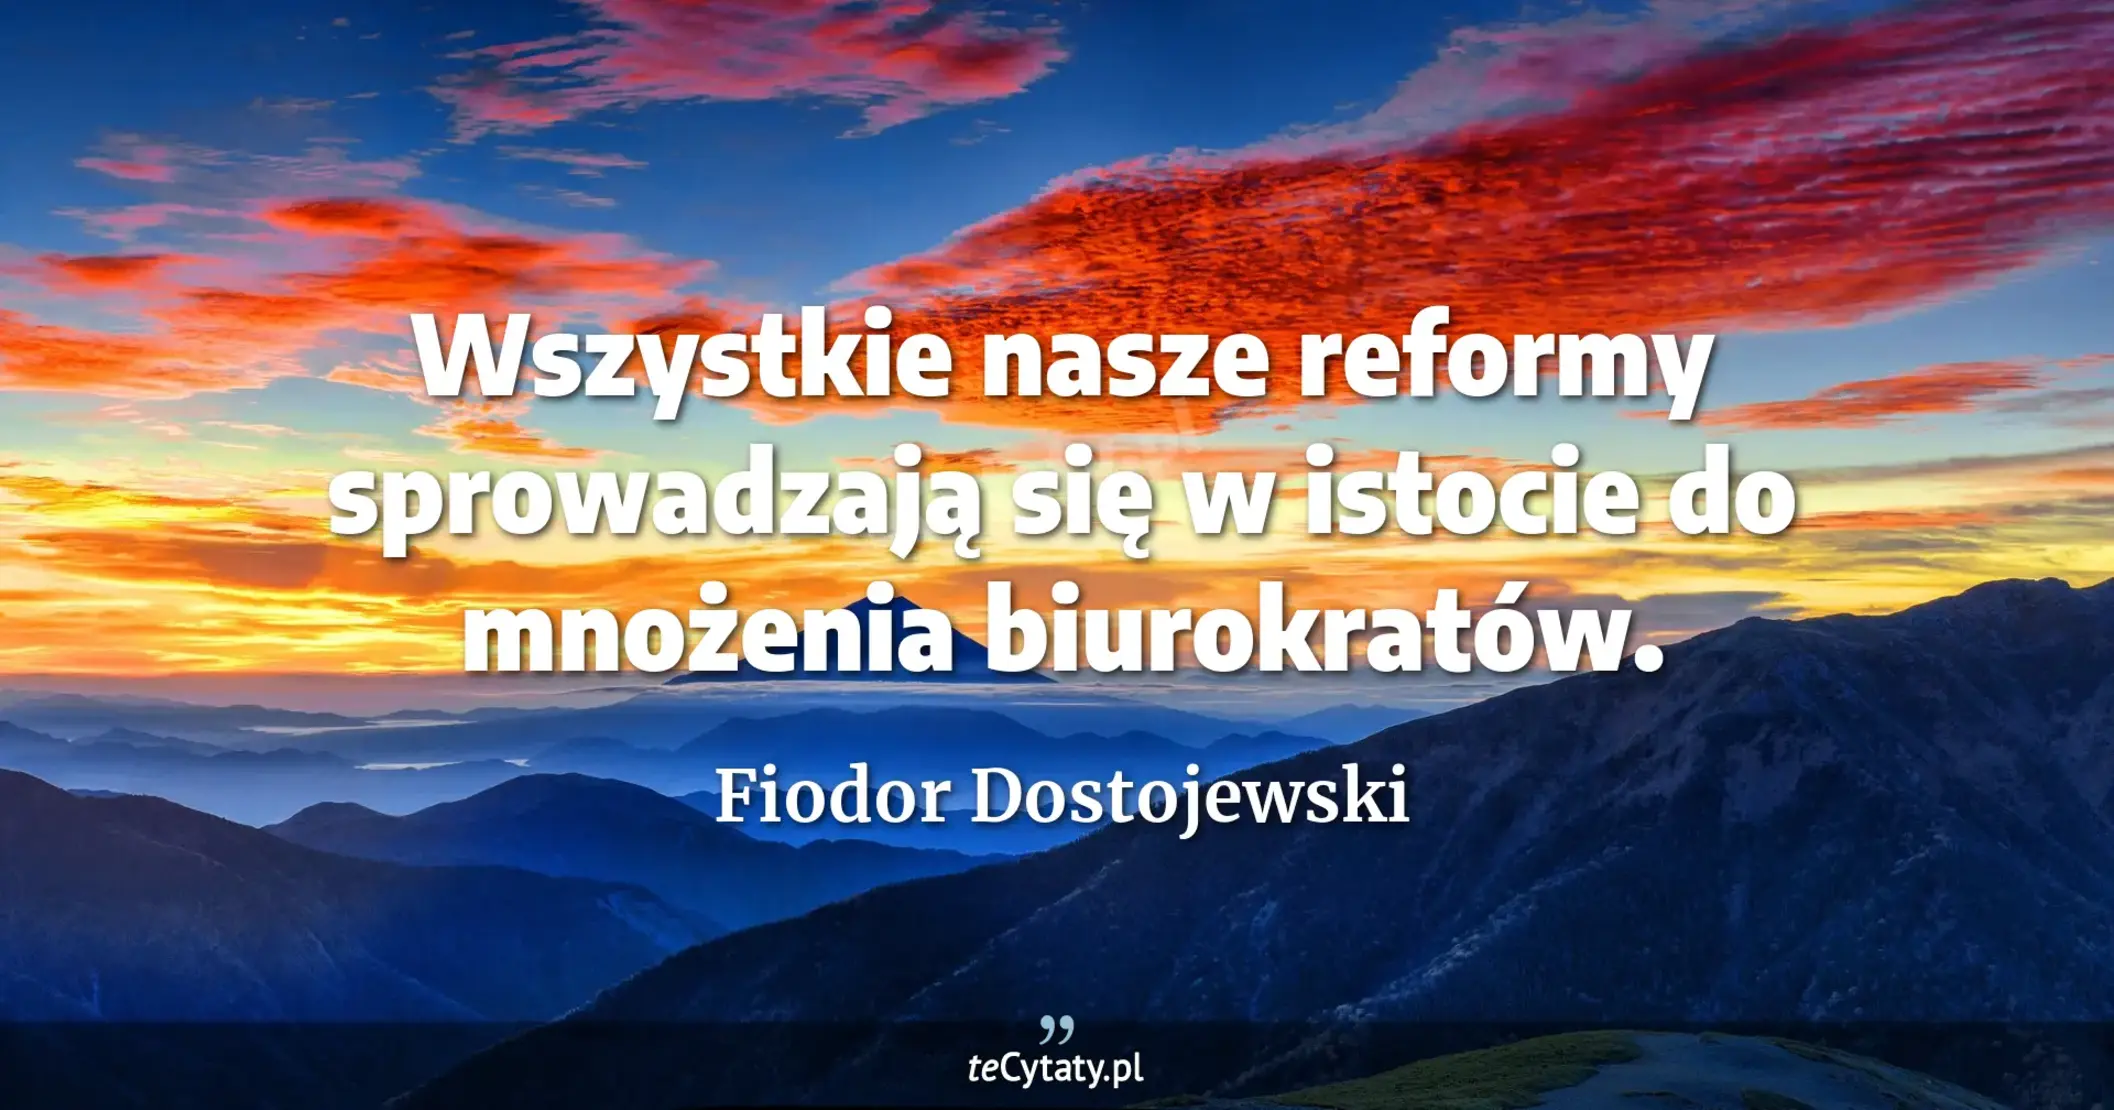 Wszystkie nasze reformy sprowadzają się w istocie do mnożenia biurokratów. - Fiodor Dostojewski